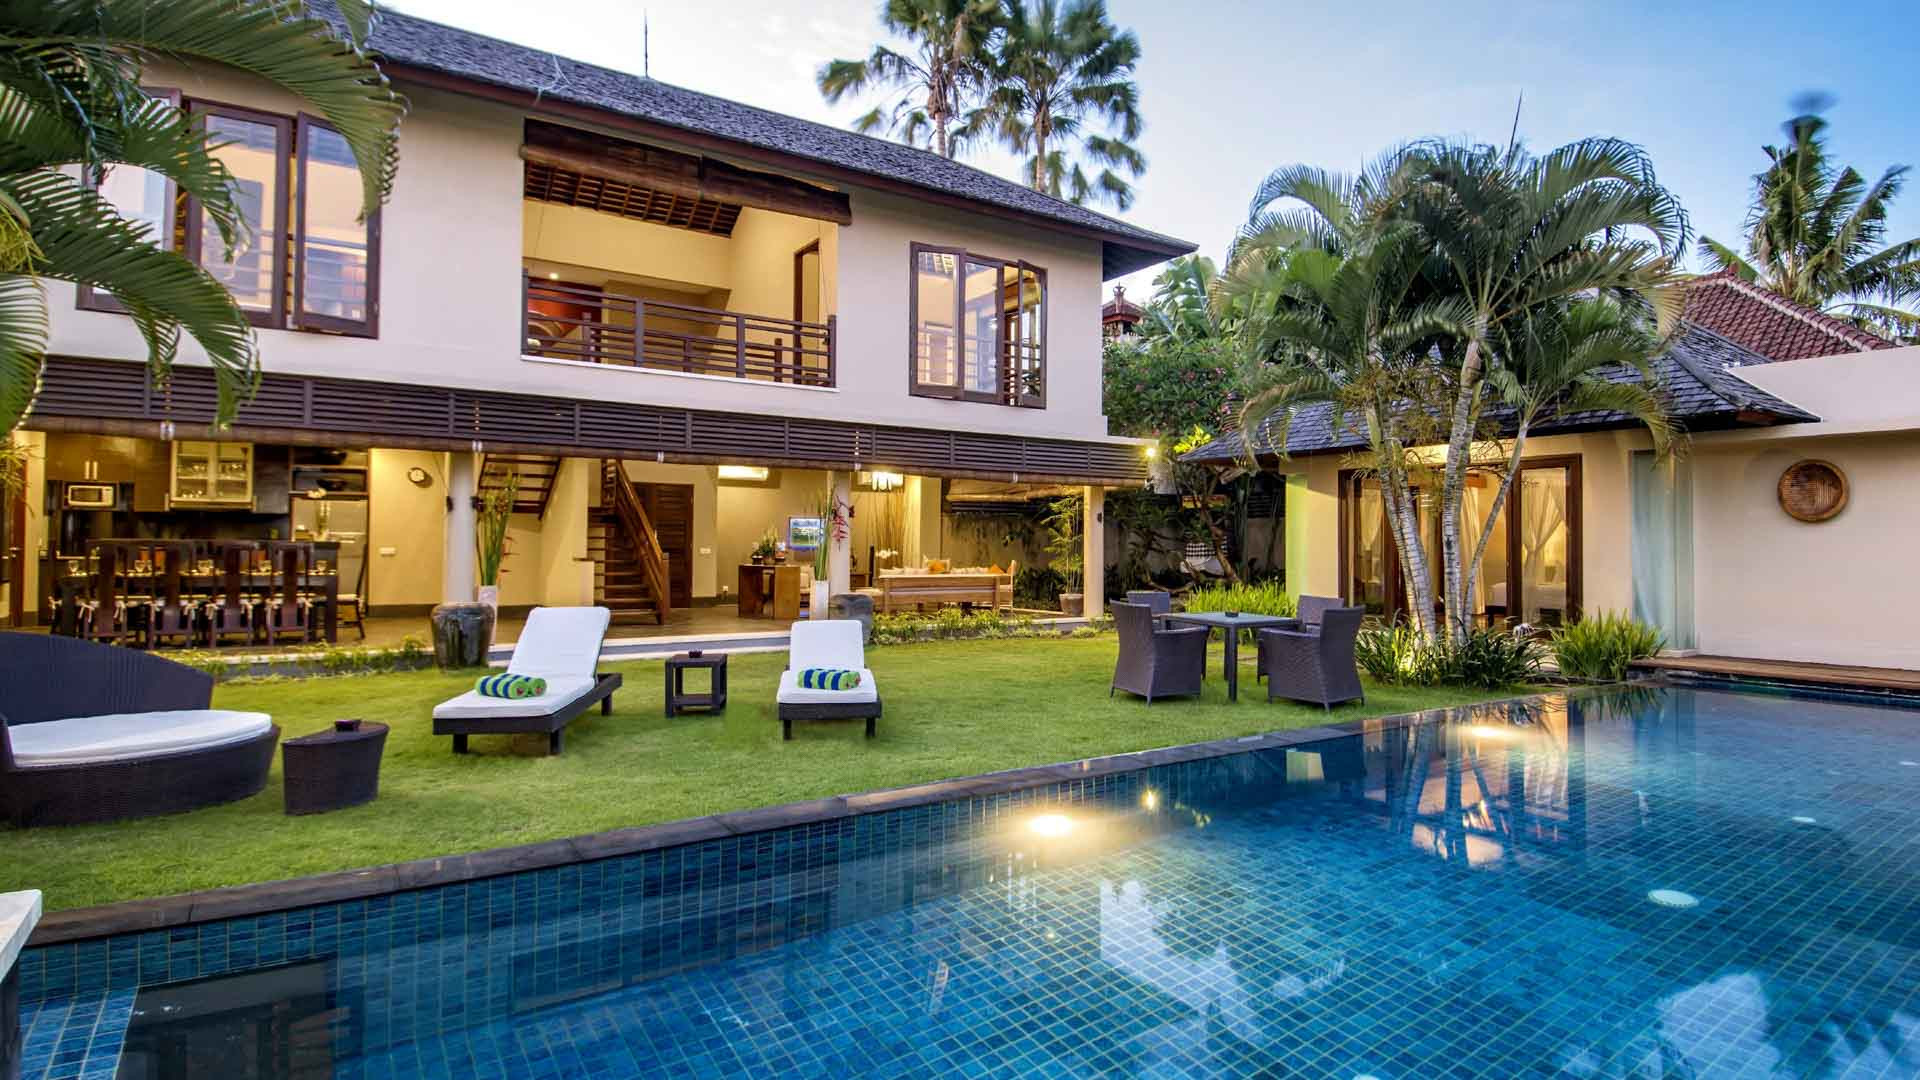 Villa M Bali Seminyak - Swimming pool - 03.jpg